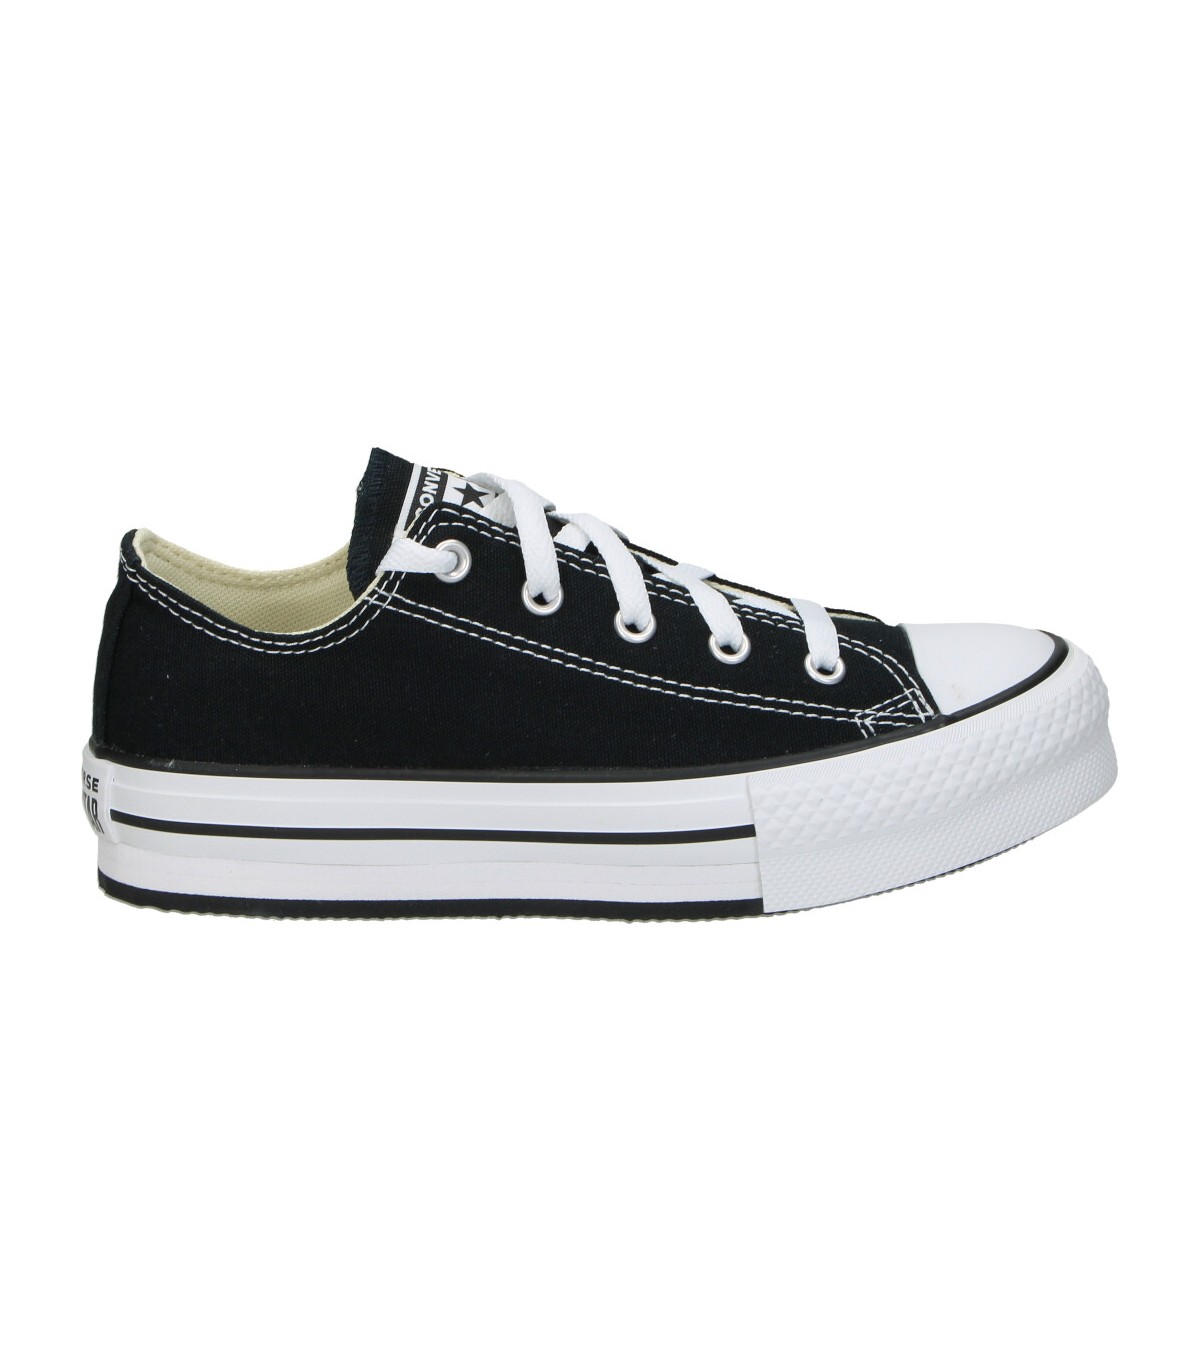 Zapatillas de niño CONVERSE 372861c-001 color negro